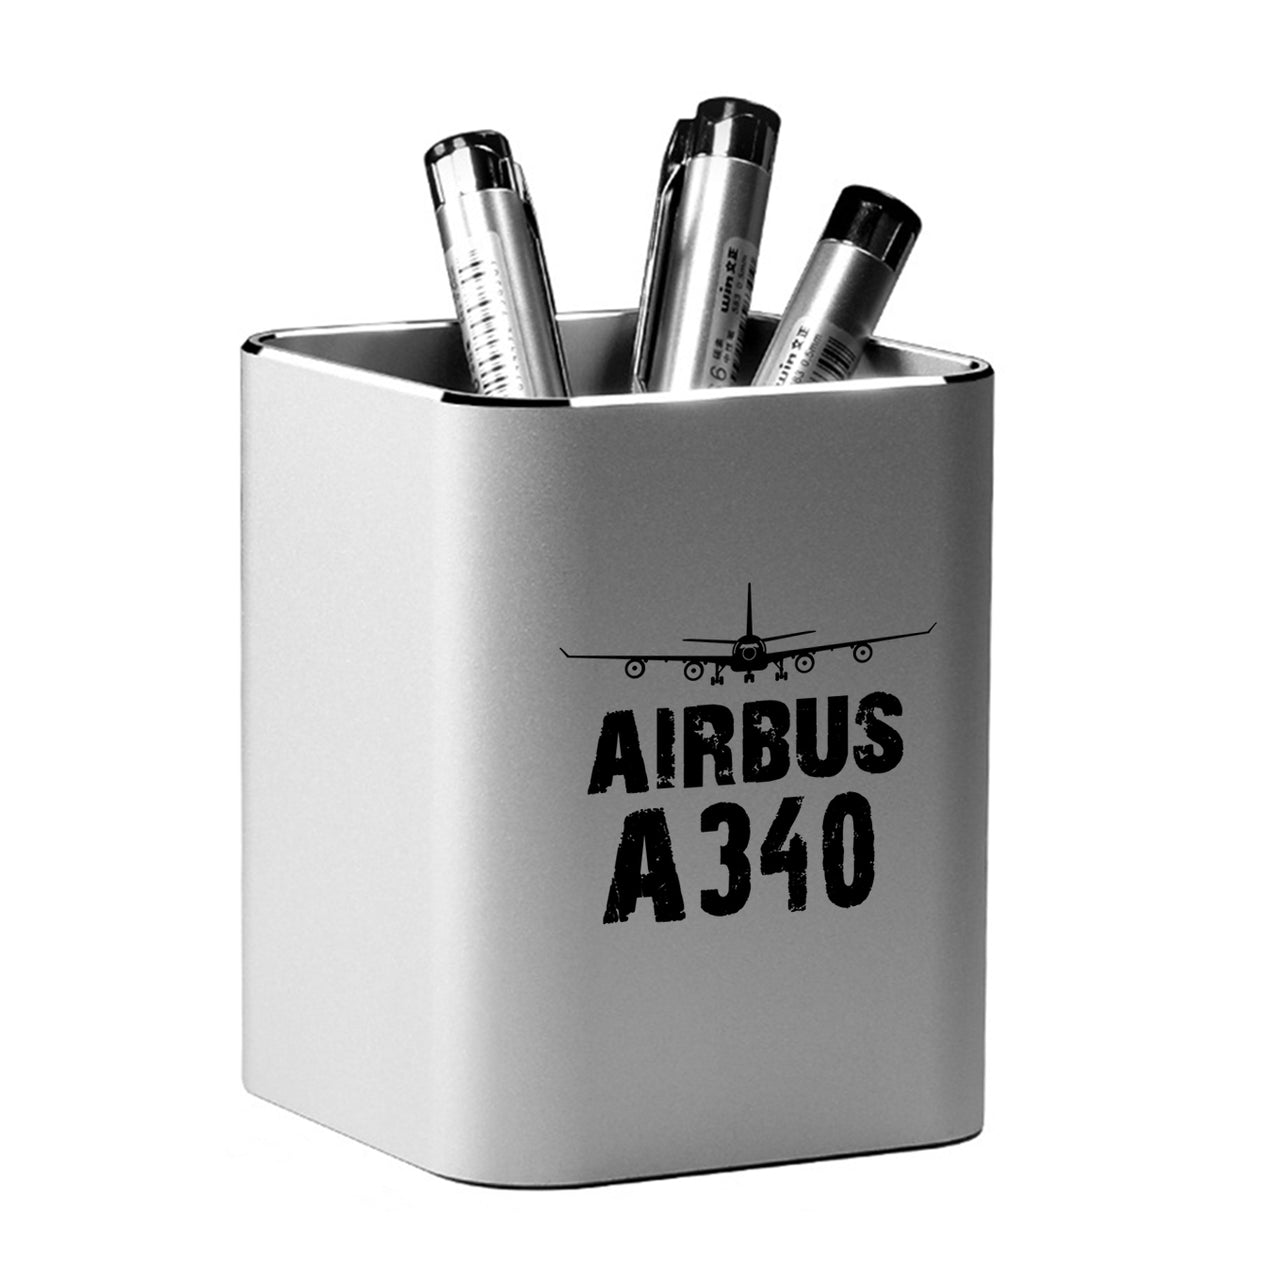 Airbus A340 & Plane Designed Aluminium Alloy Pen Holders